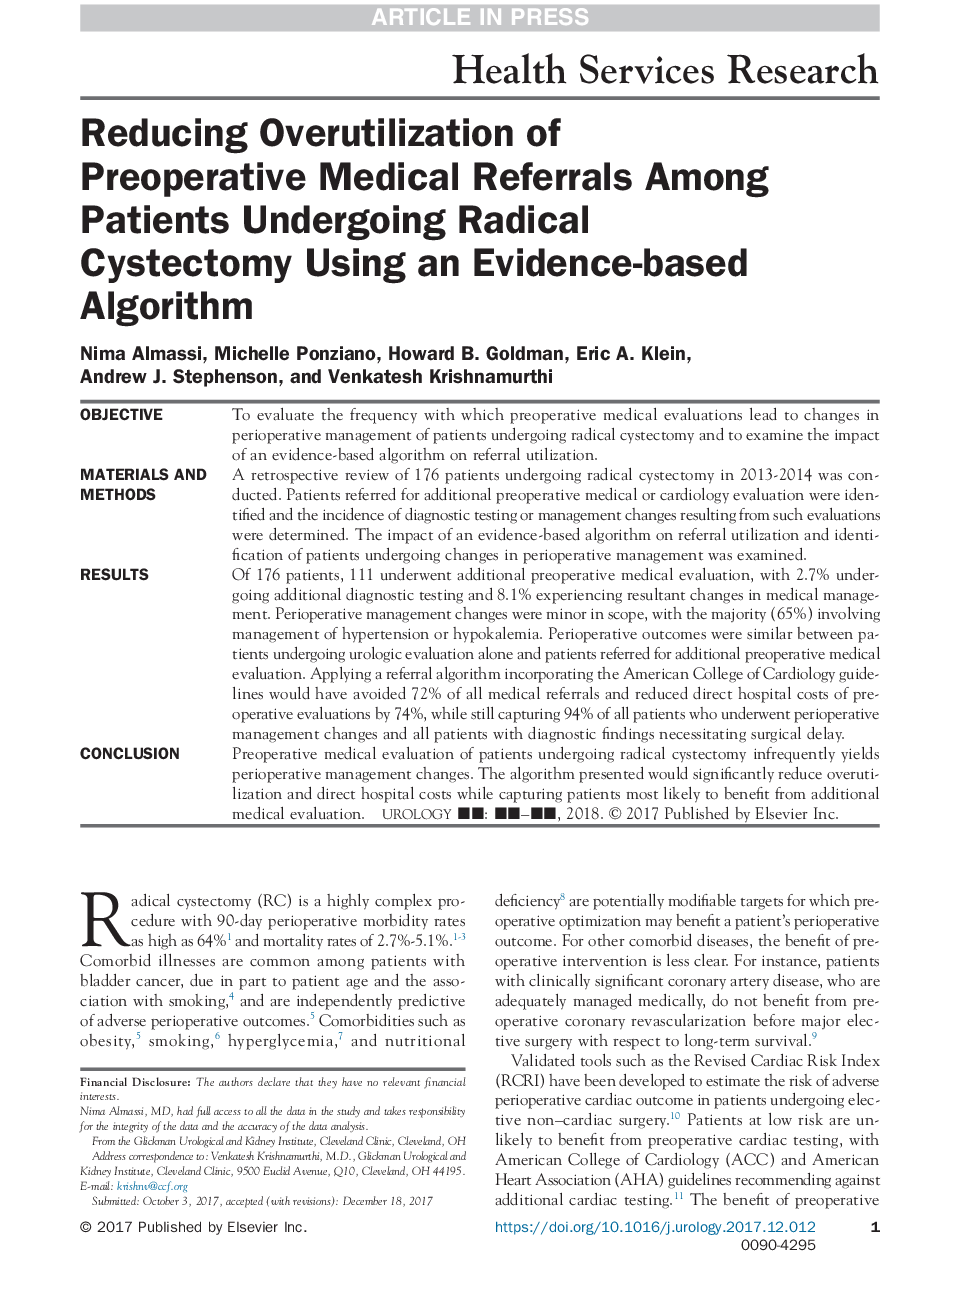 کاهش مجدد استفاده از مراجعات پزشکی قبل از عمل در بیماران مبتلا به سکتکتومی رادیکال با استفاده از الگوریتم مبتنی بر شواهد 